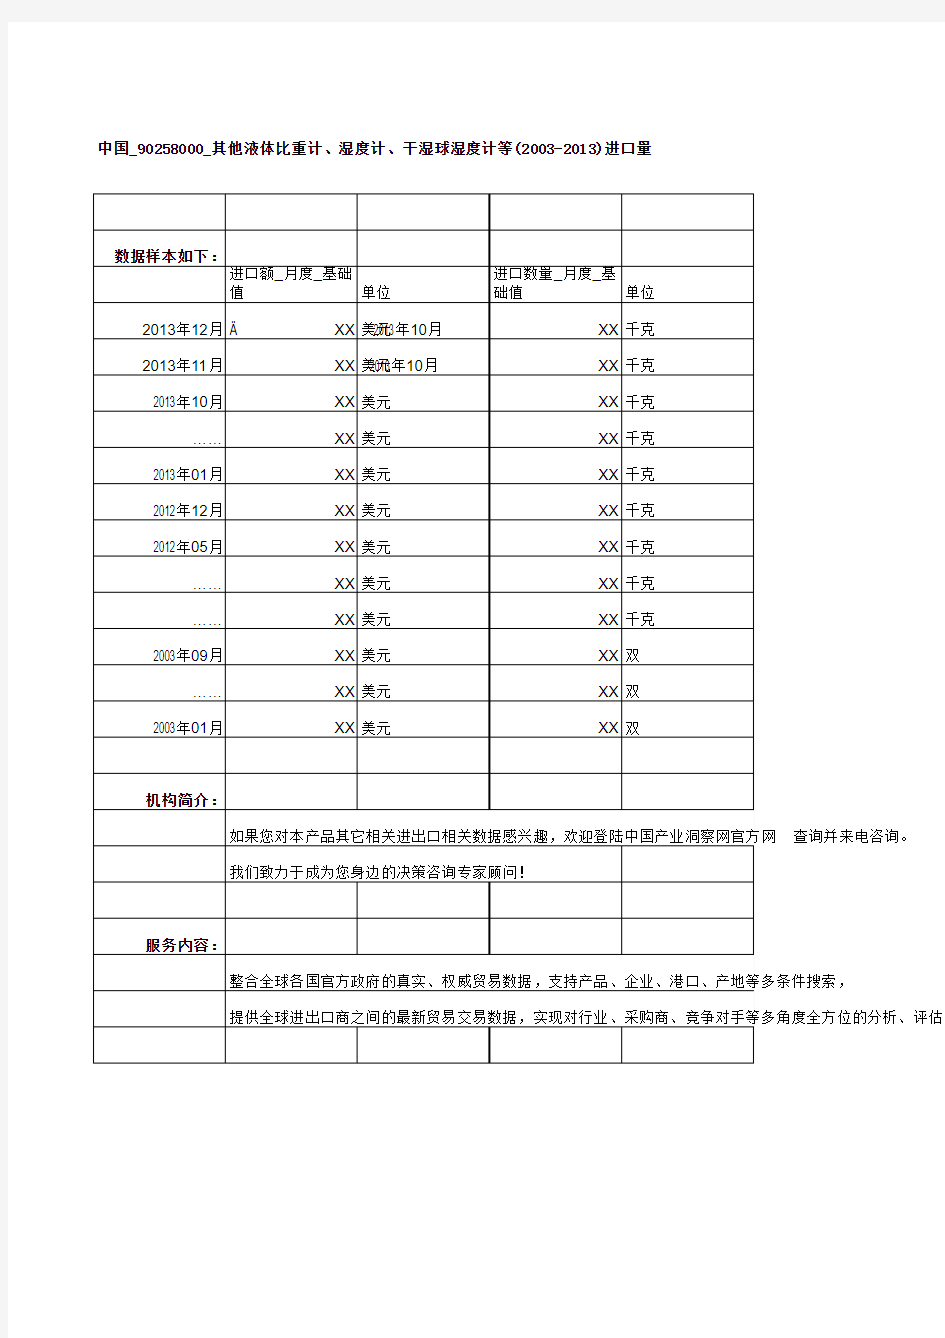 中国_90258000_其他液体比重计、湿度计、干湿球湿度计等(2003-2013)进口量及进口额